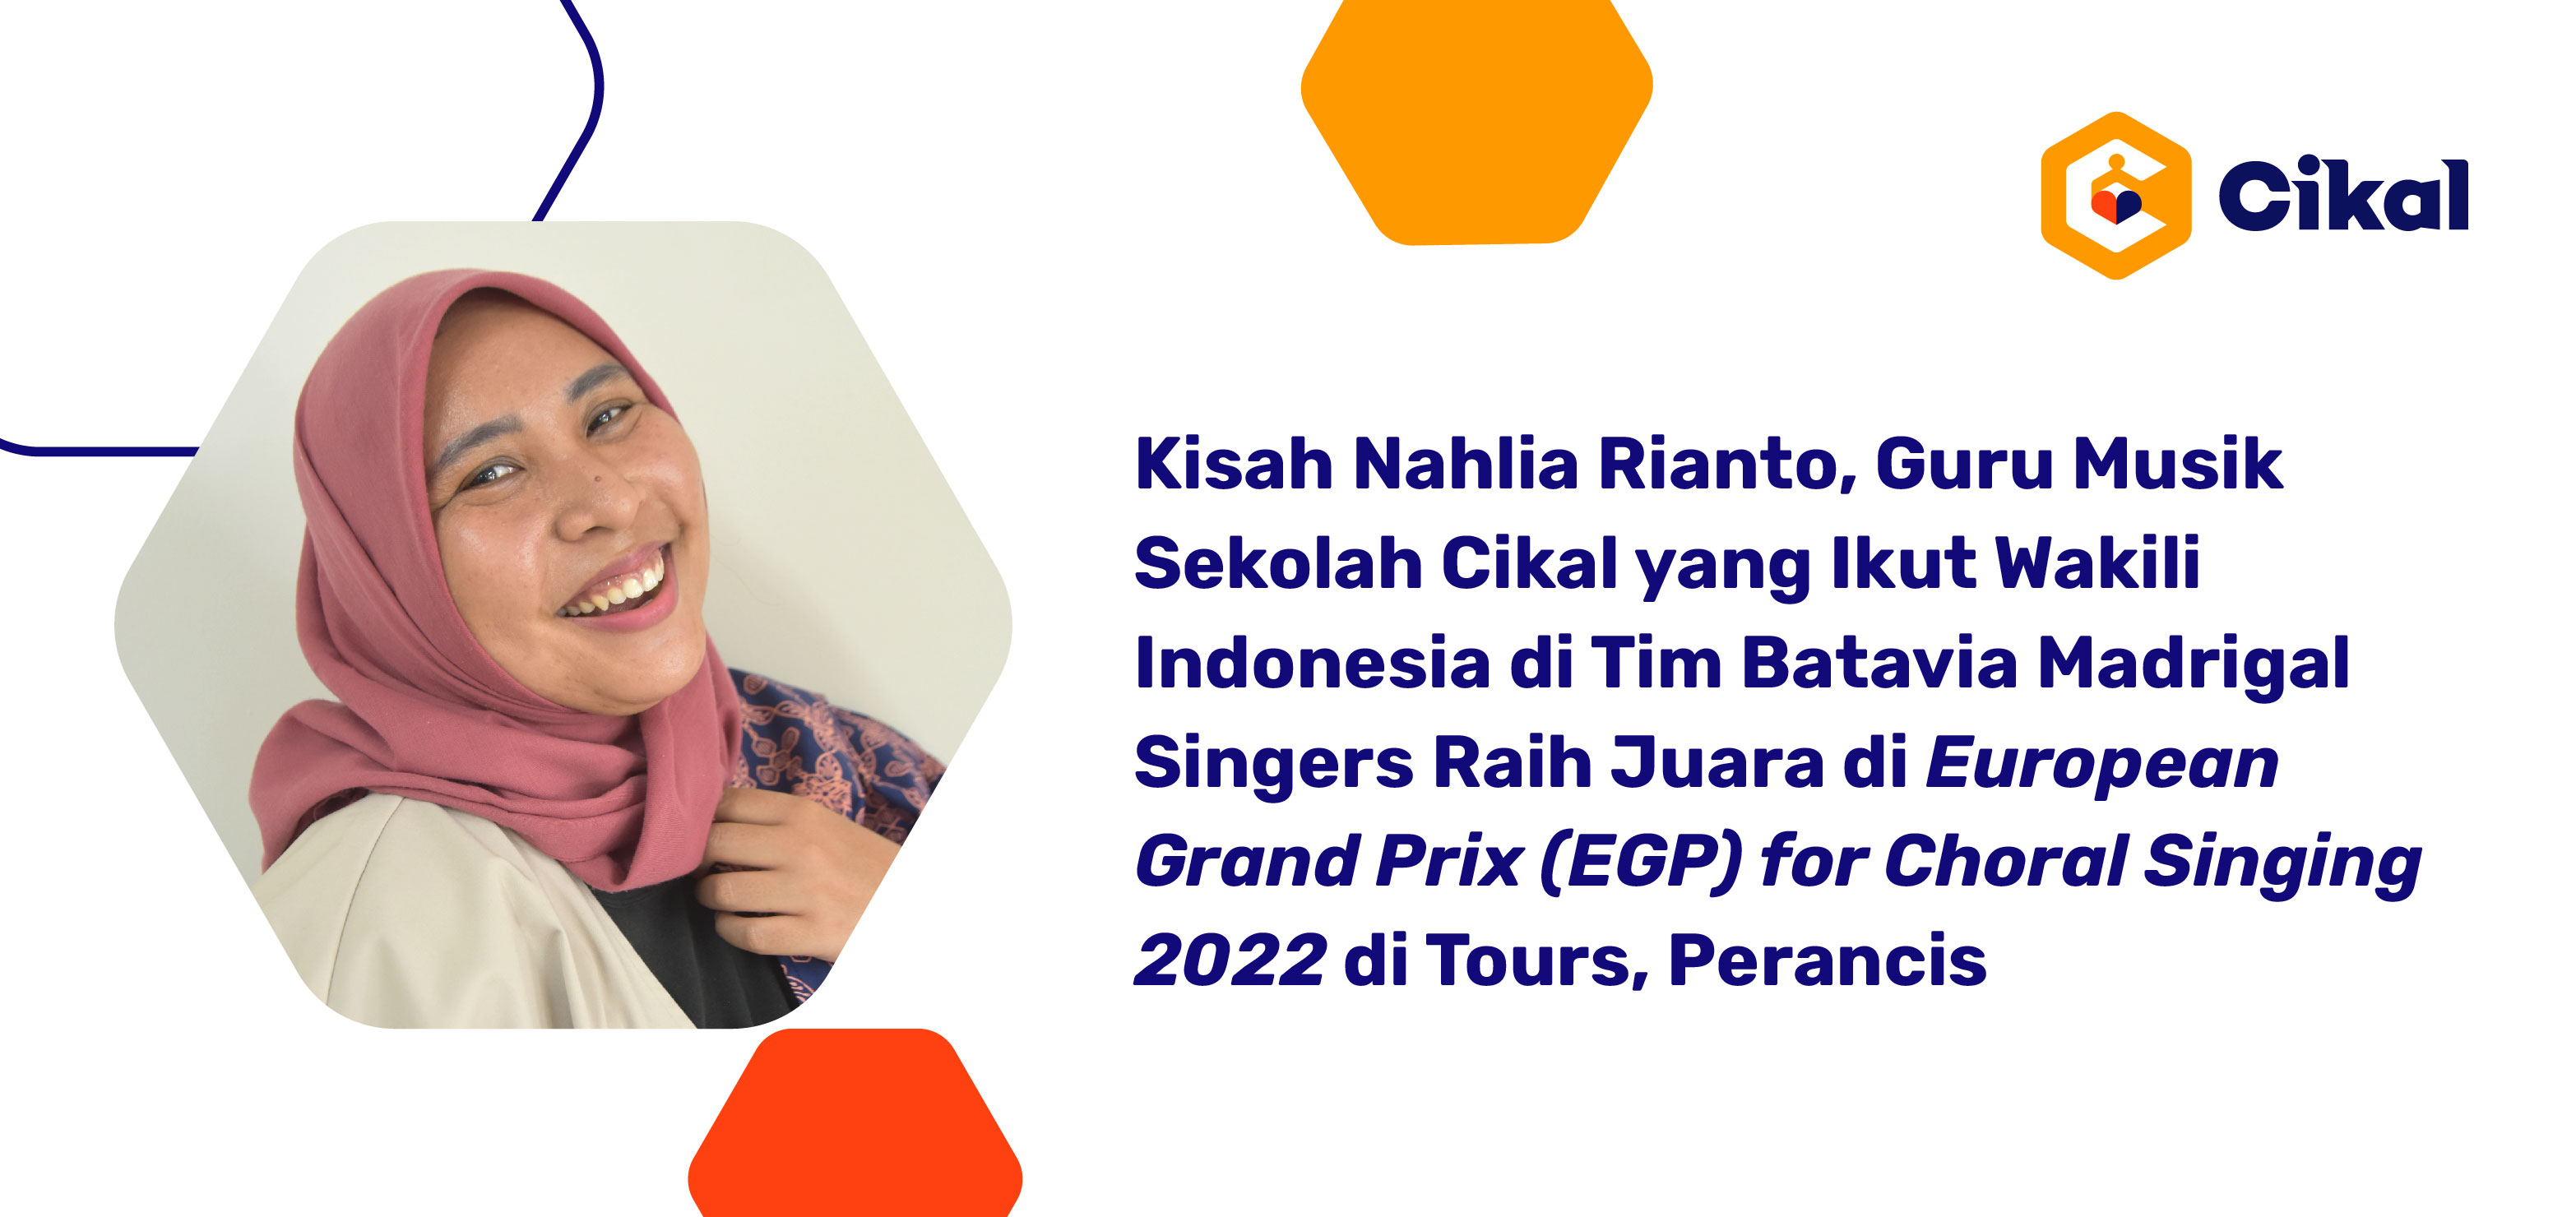 Kisah Nahlia Rianto, Guru Musik Sekolah Cikal yang Ikut Wakili Indonesia di Tim Batavia Madrigal Singers Raih European Grand Prix (EGP) for Choral Singing 2022 di Tours, Prancis